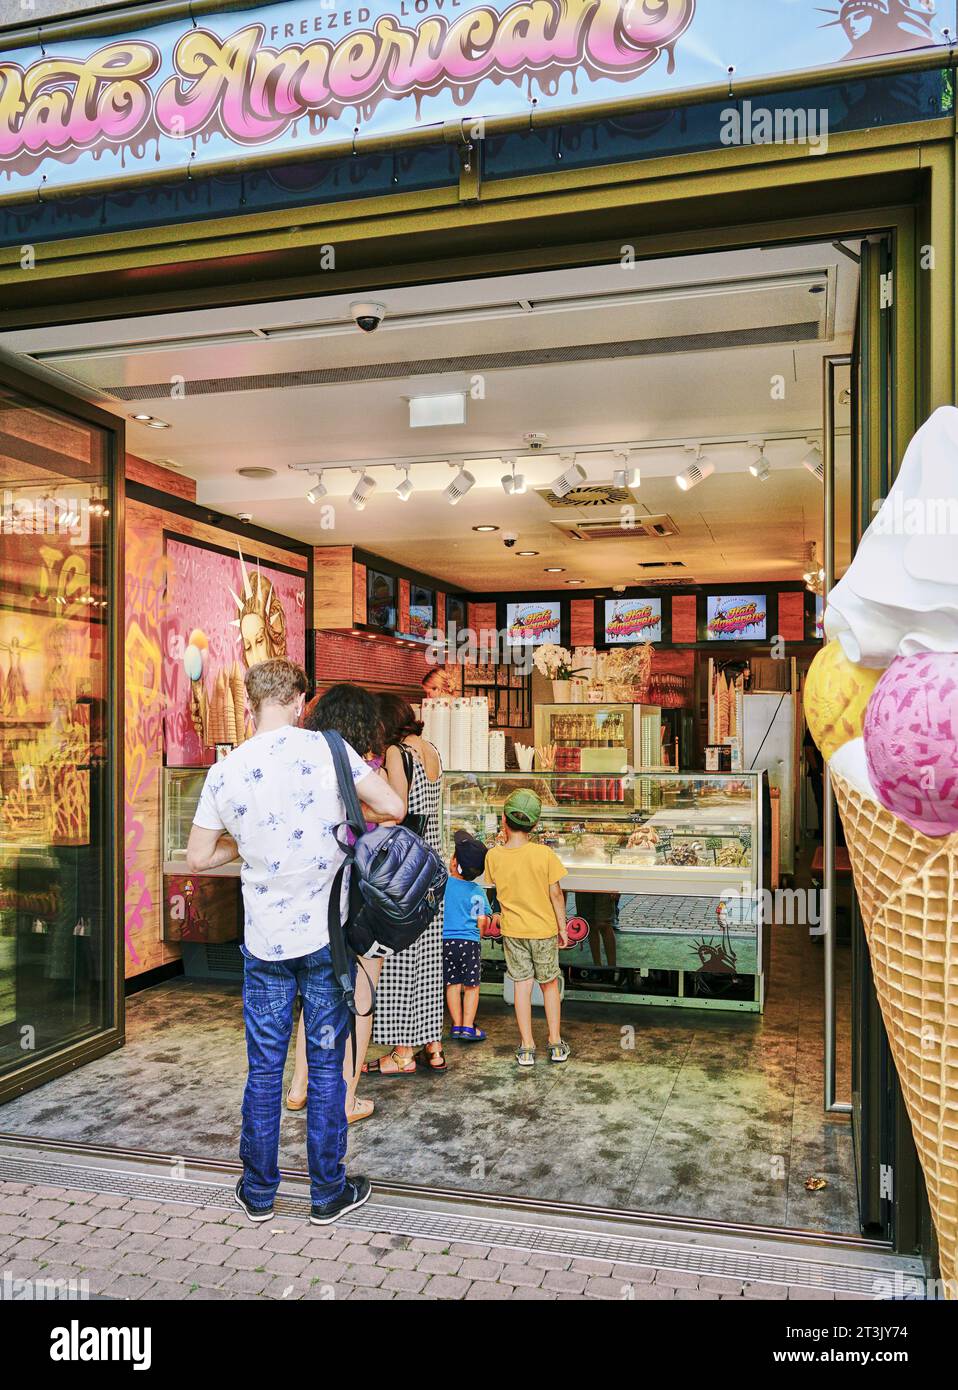 La gente si esibisce in un famoso negozio di gelati a Colonia, in Germania, sulla strada principale dello shopping chiamata Hohe Strasse, situato nel quartiere della città vecchia. Foto Stock